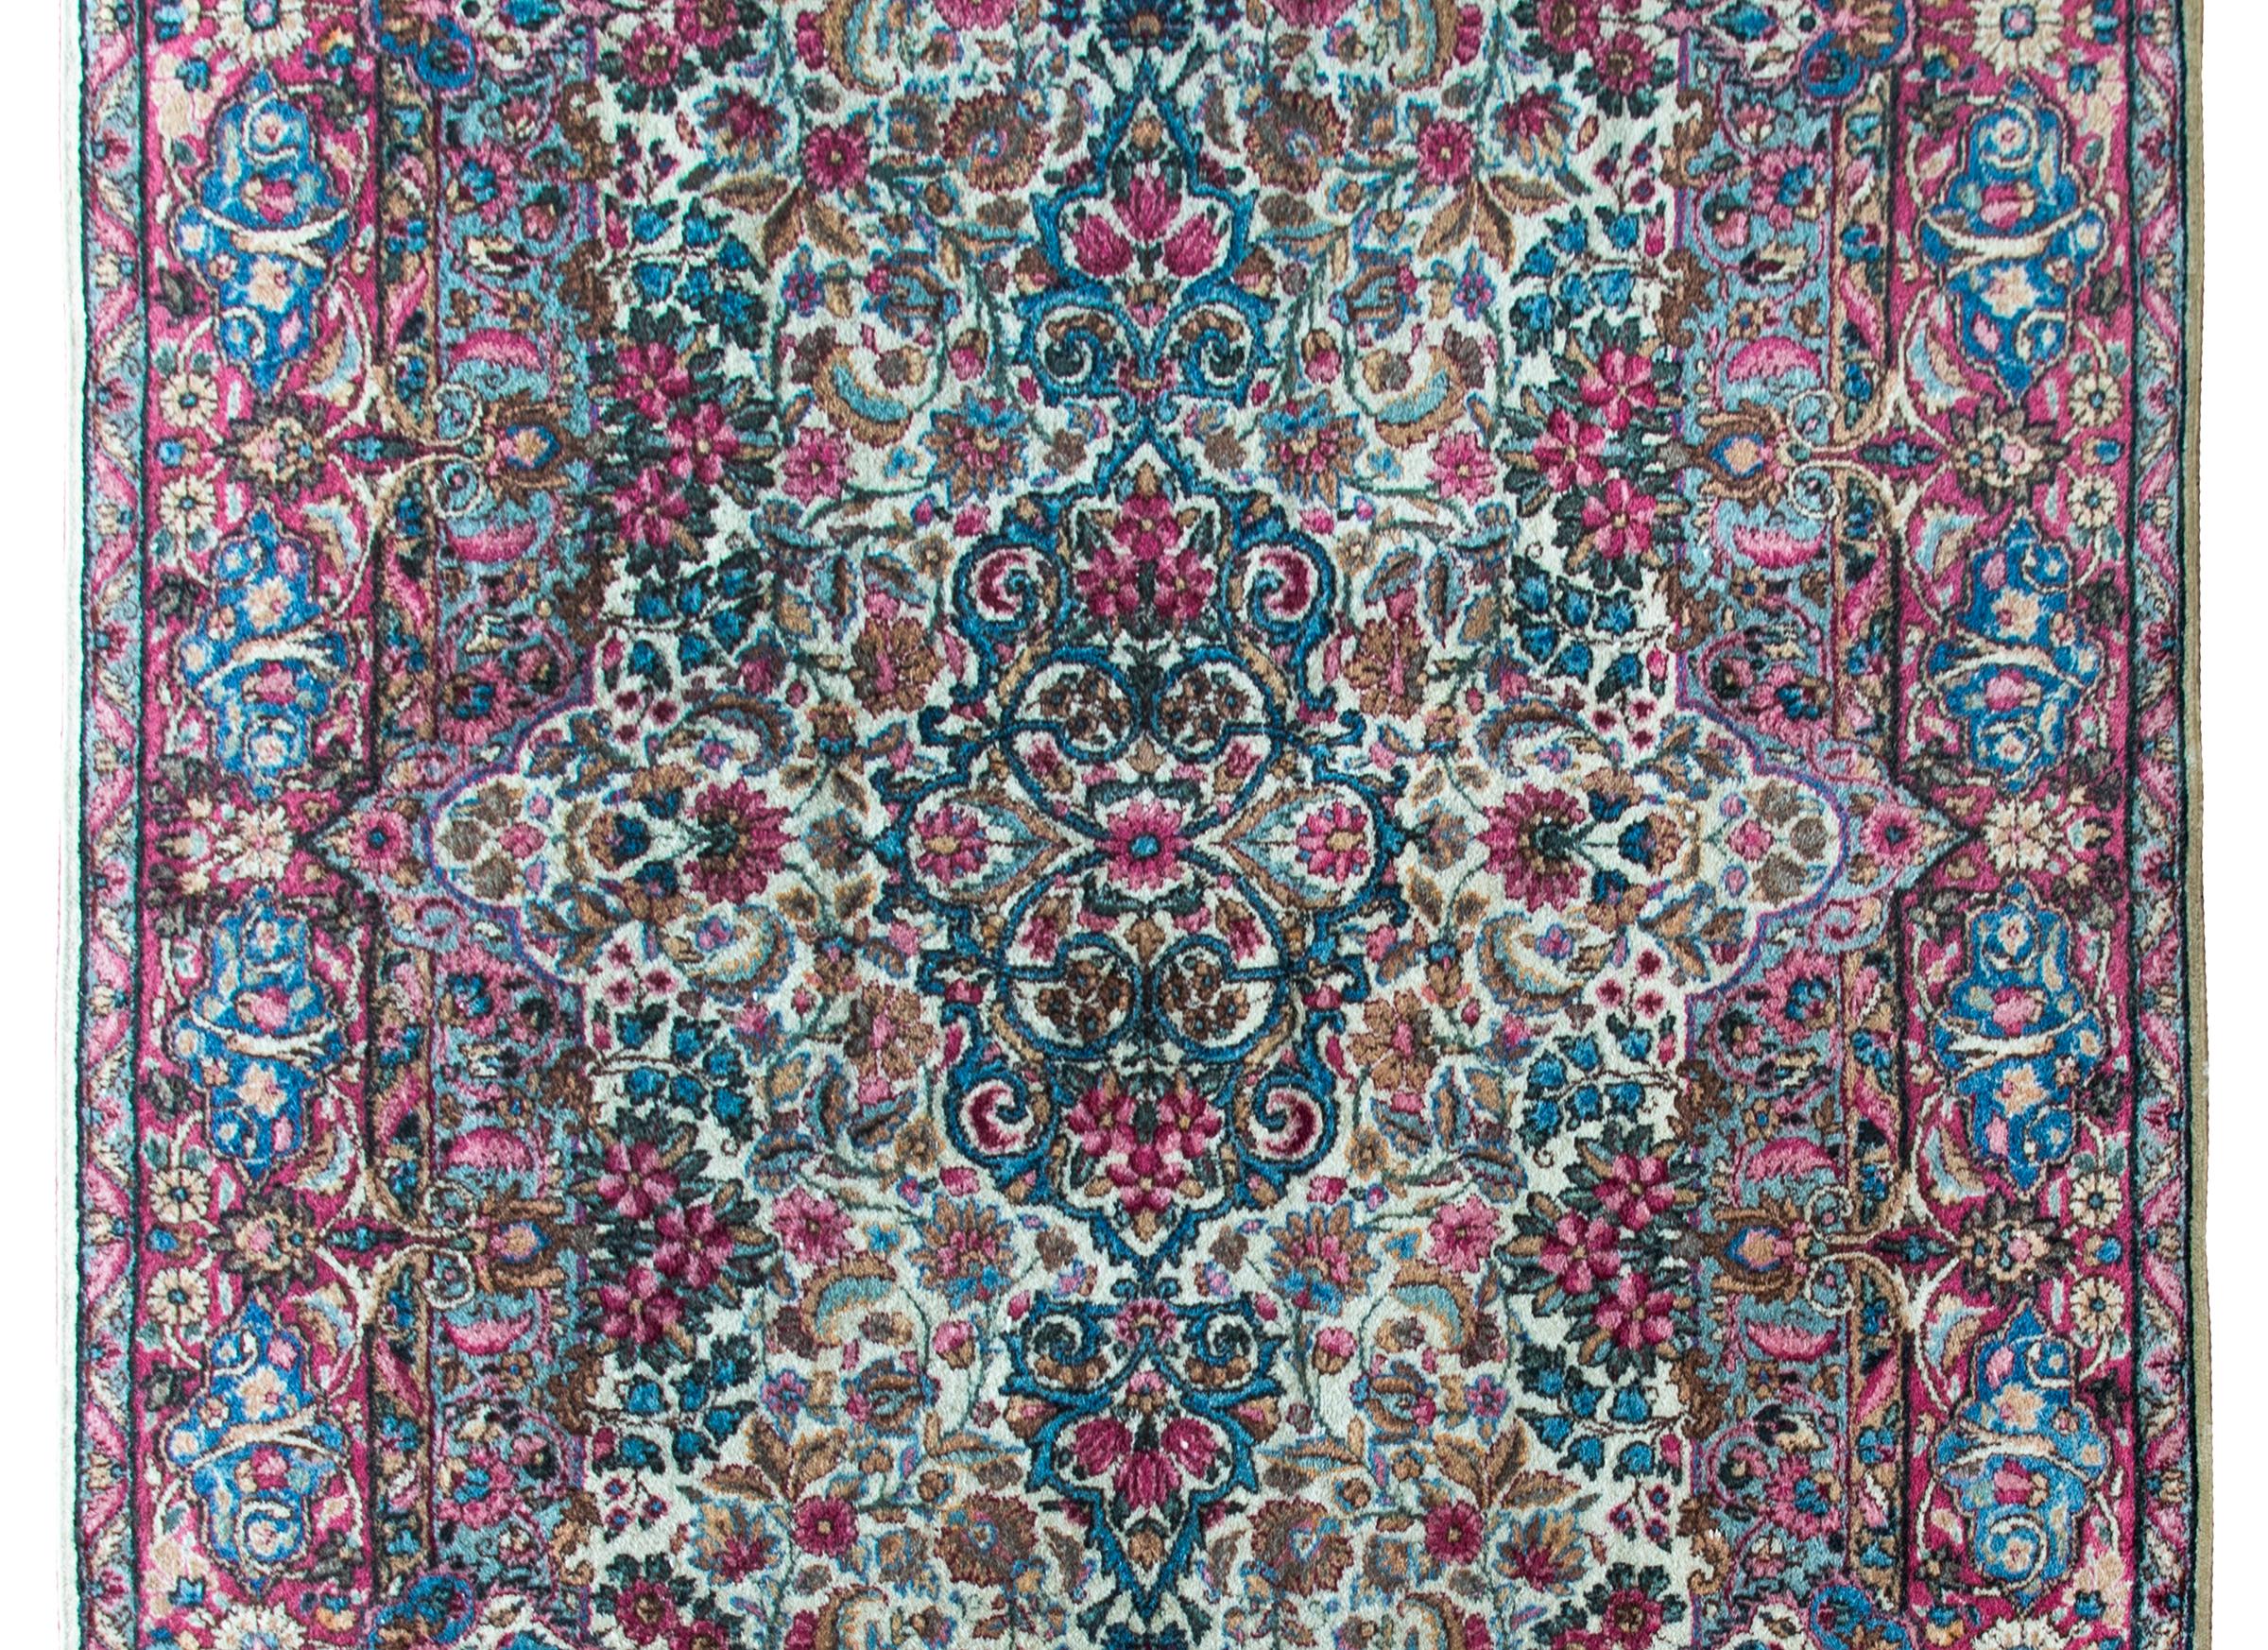 Ein schöner persischer Kirman-Teppich aus dem frühen 20. Jahrhundert mit einem spiegelnden, dicht gewebten Blumenmuster mit unzähligen Blumen, umgeben von einer unglaublichen Blumenmuster-Bordüre, gewebt in den traditionellen Kirman-Farben Creme,